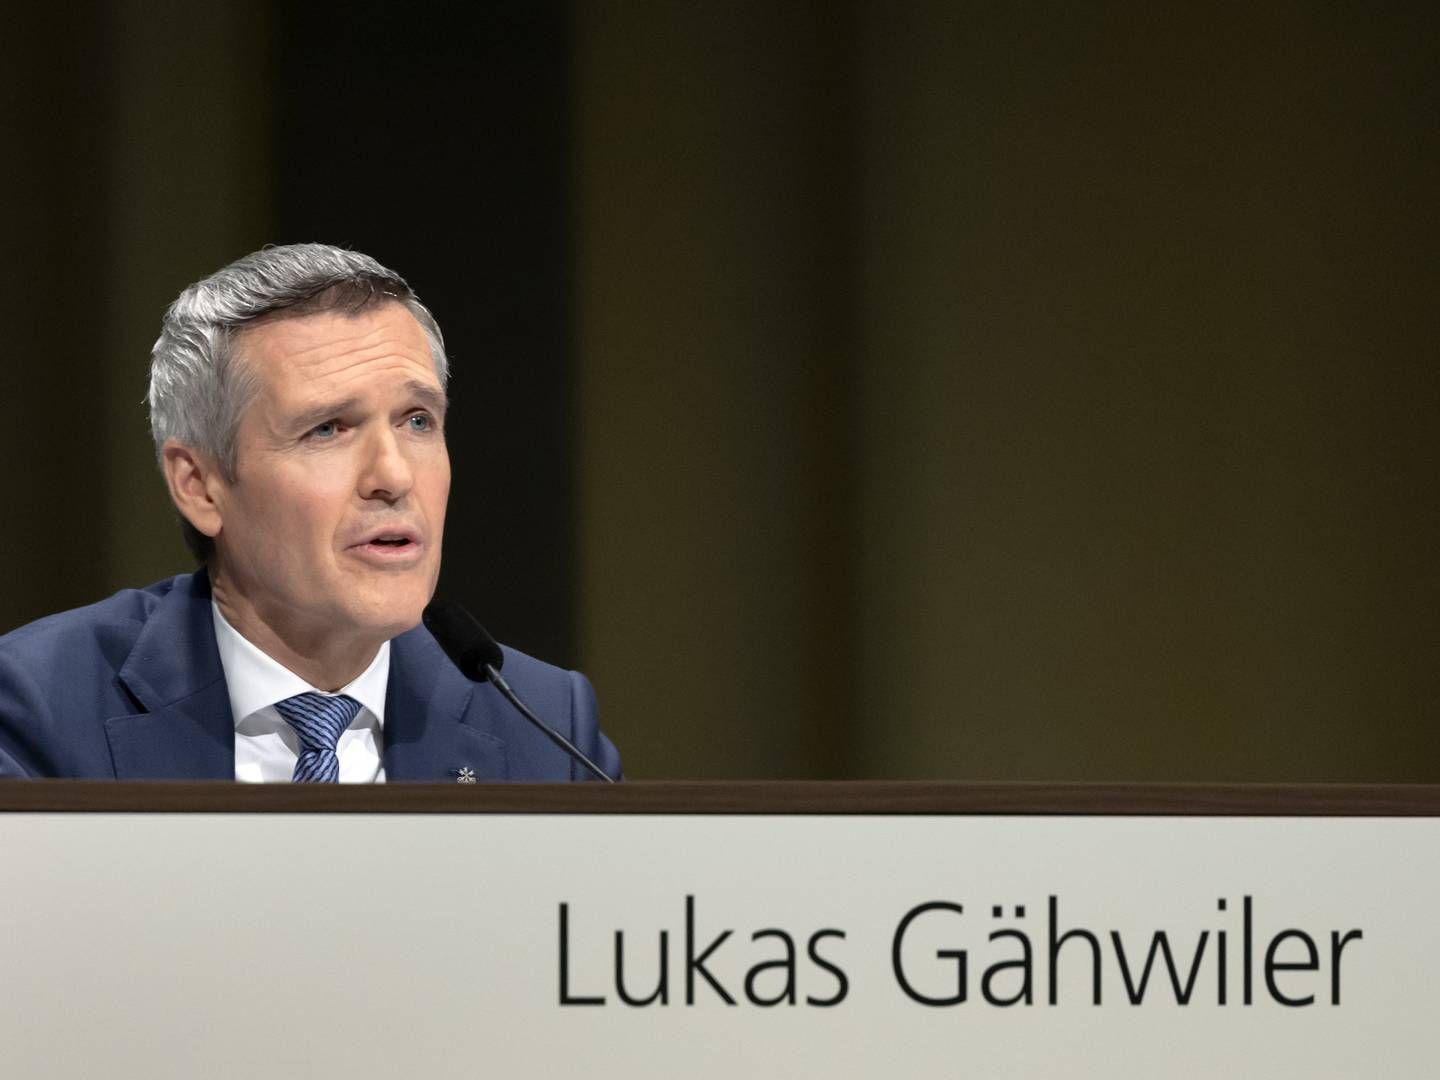 Die UBS hofft auf erfolgreiche Lobbyarbeit durch Verwaltungsrats-Vizepräsident Lukas Gähwiler | Foto: picture alliance/KEYSTONE | GEORGIOS KEFALAS